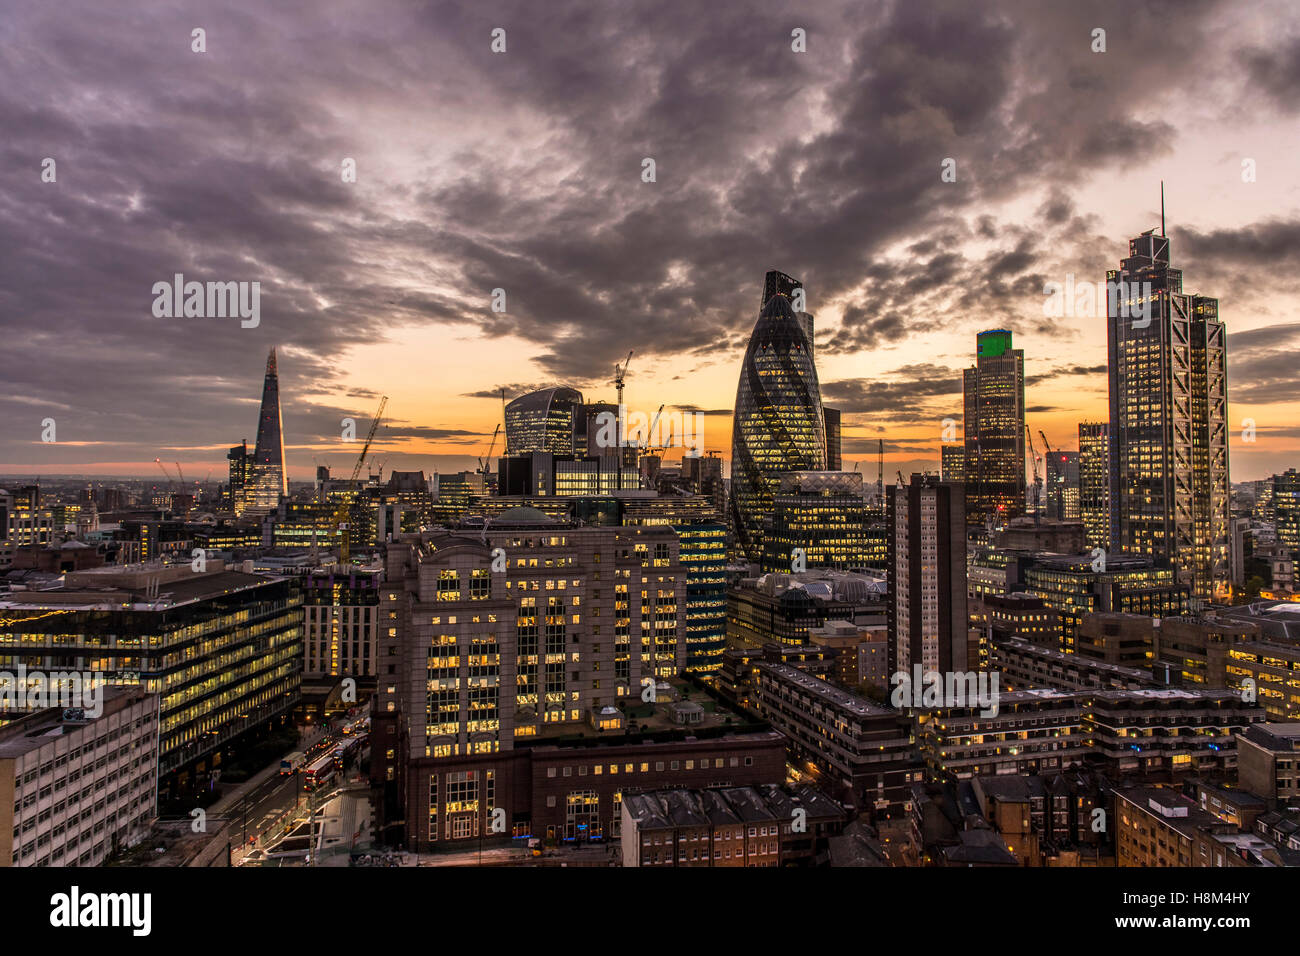 Un horizonte de Londres, paisaje urbano, de gran altura, rascacielos, el pepinillo, Torre 42, Heron Tower, noche, atardecer, centro financiero de la ciudad Foto de stock